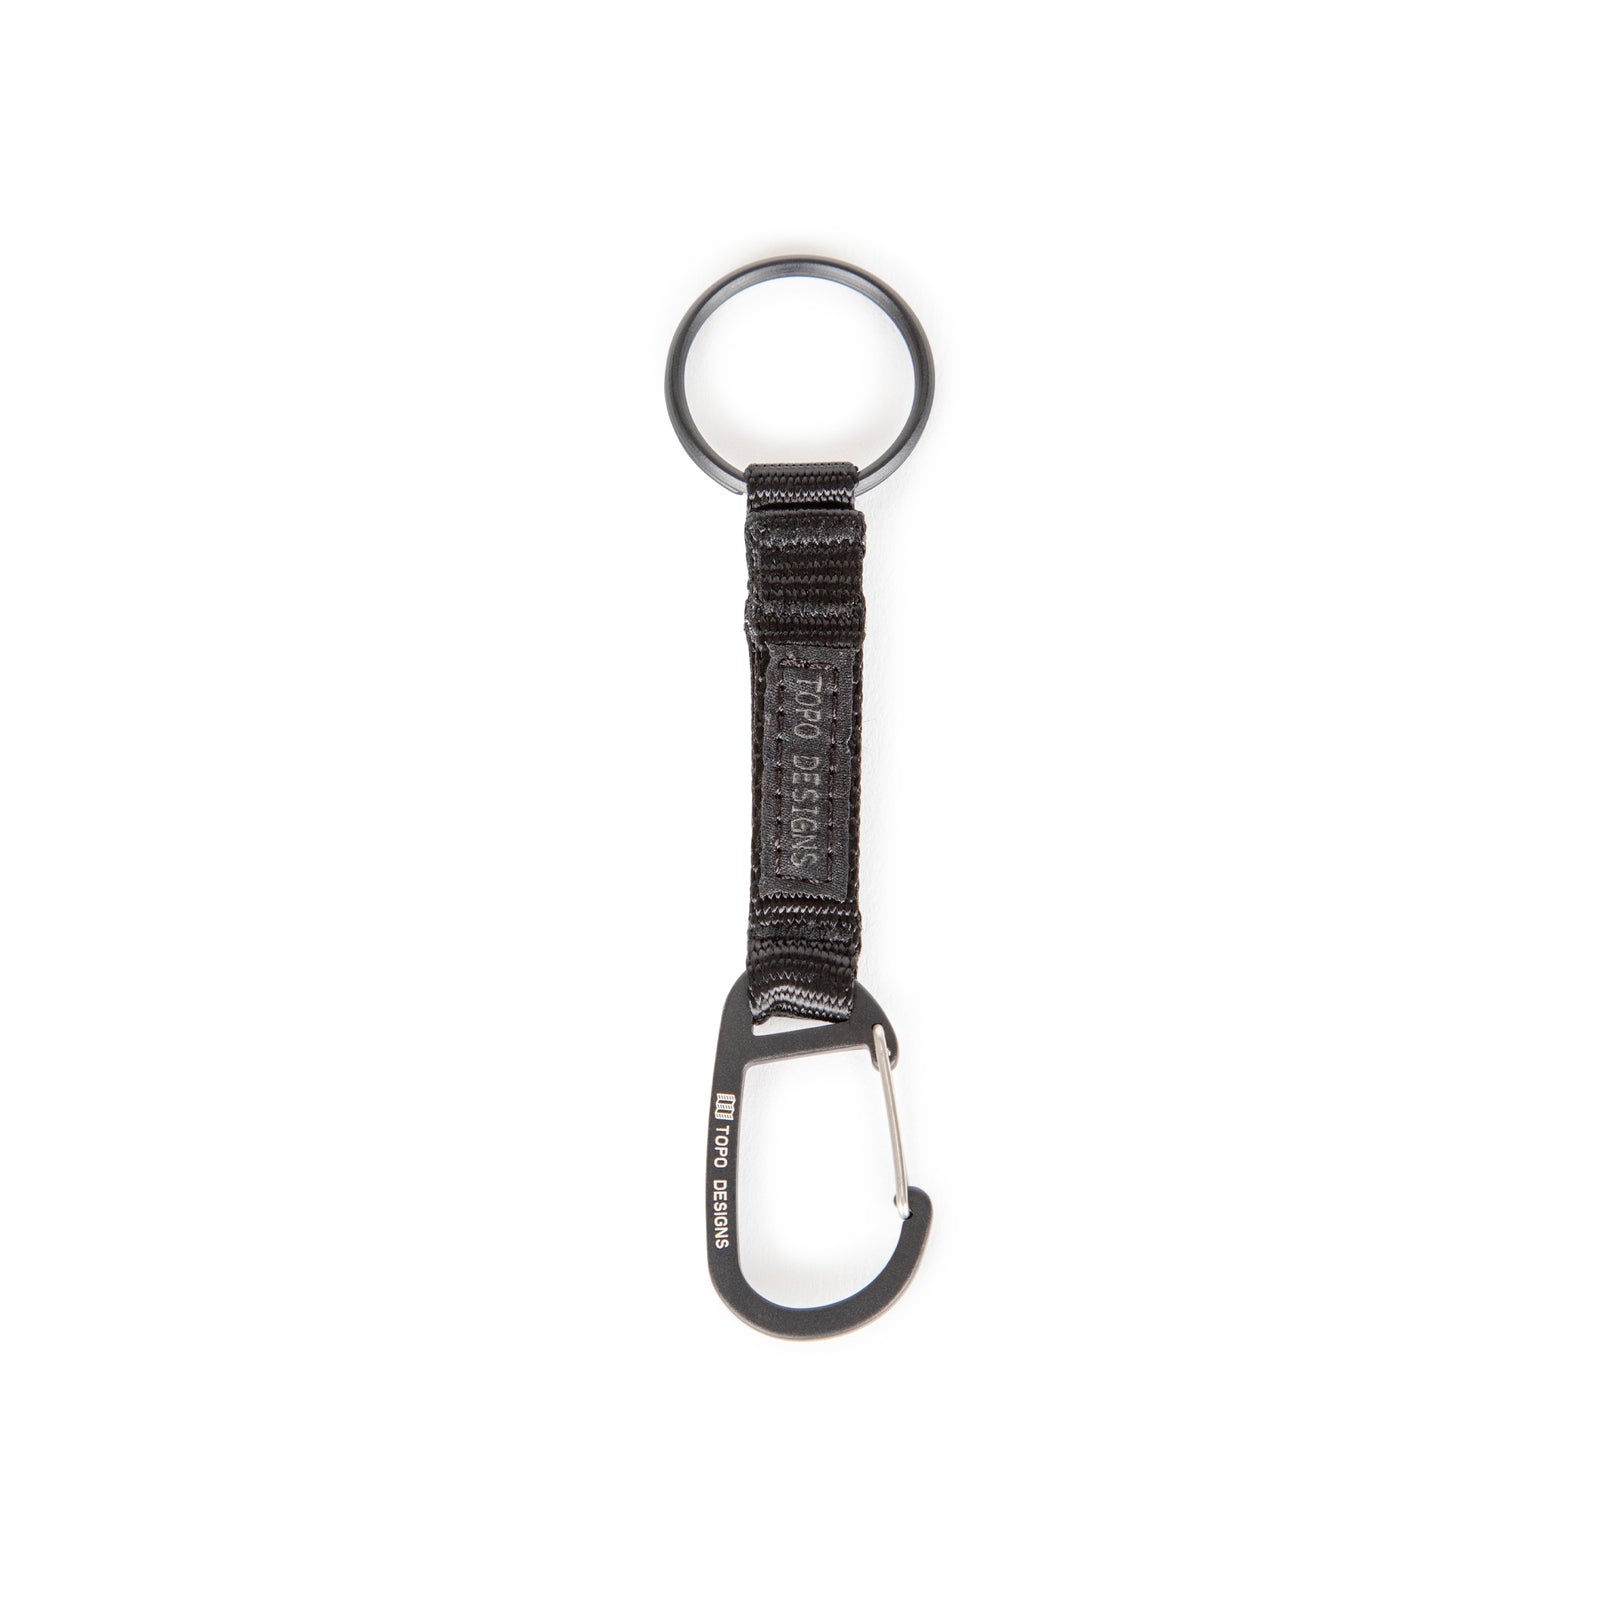 Topo Designs Key Clip carabiner keychain in "Black".